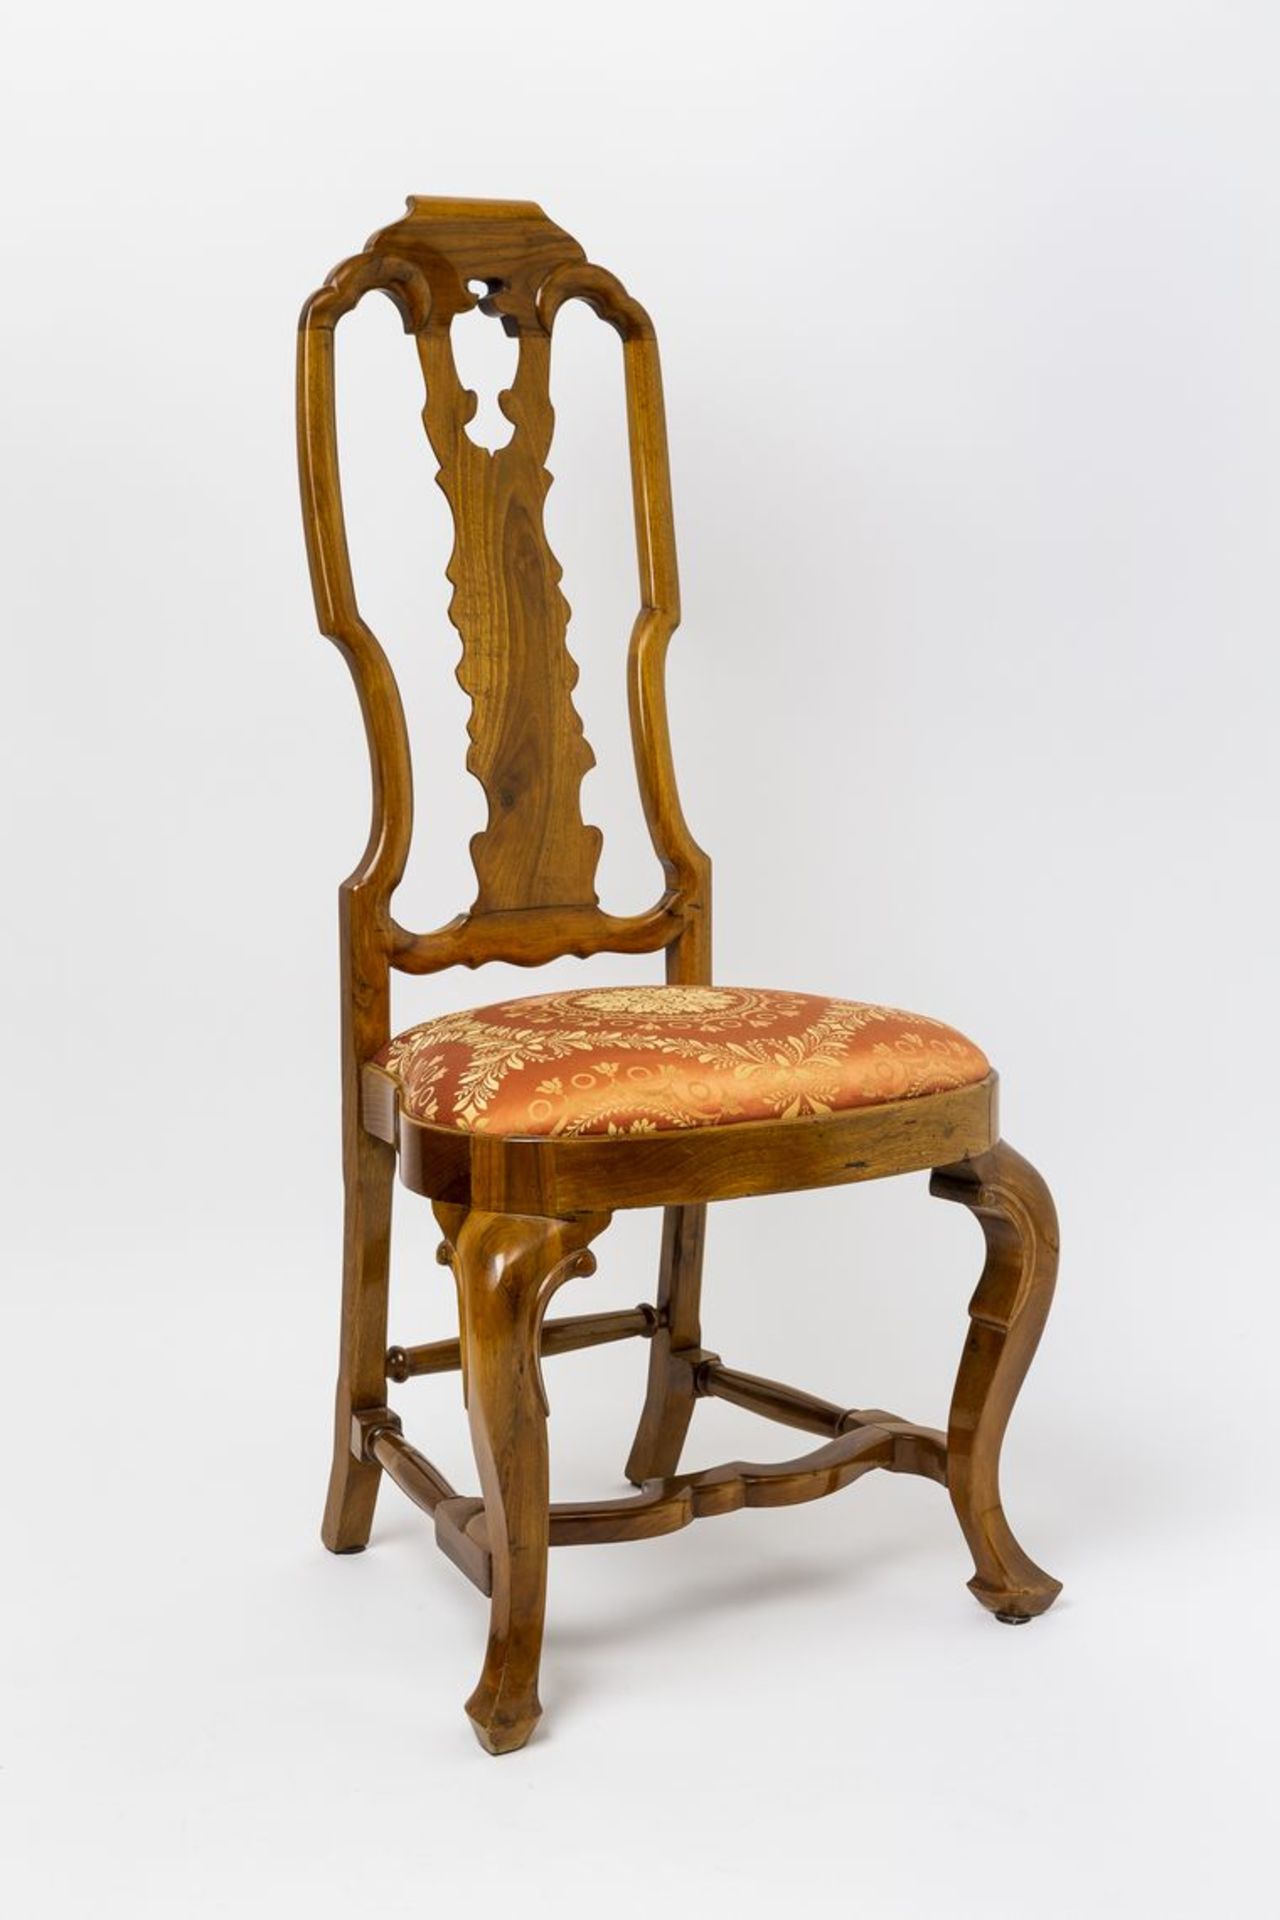 Feiner Stuhl im BarockstilNussbaum. Edel gepolsterte Sitzfläche. H. 89 cm, Sitzhöhe 44 cm, B. 44